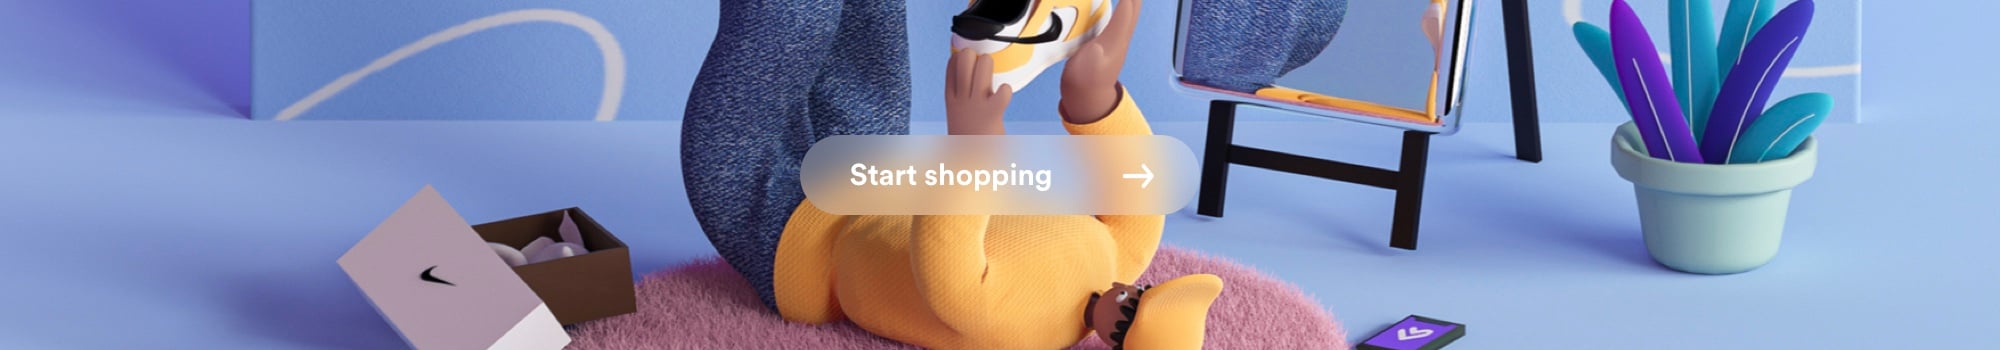 Start_Shopping